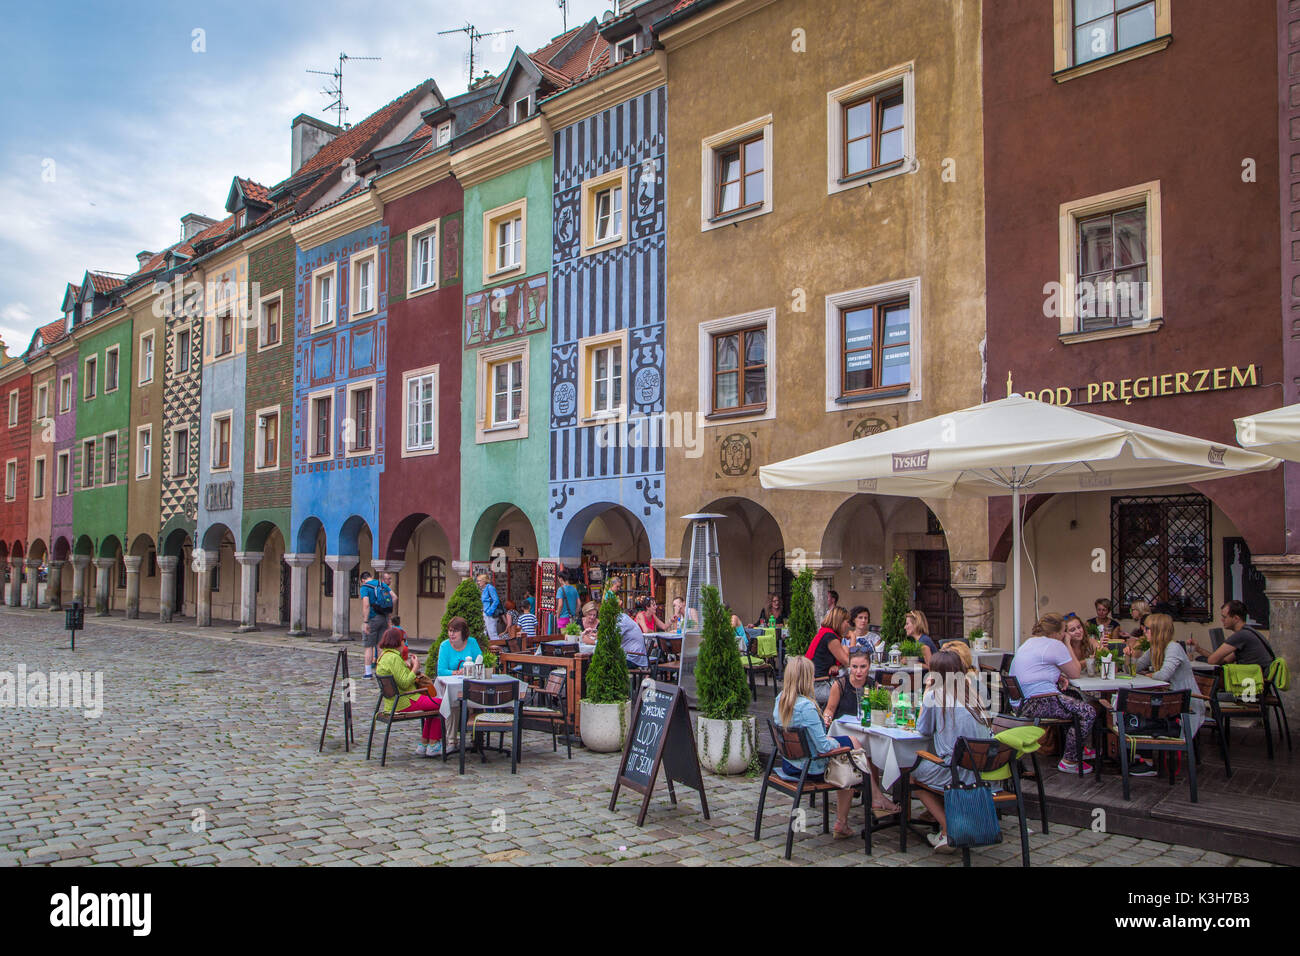 Polonia, Poznan, ciudad de Stary Rynek, casas pintorescas, Plaza de la Ciudad Vieja Foto de stock